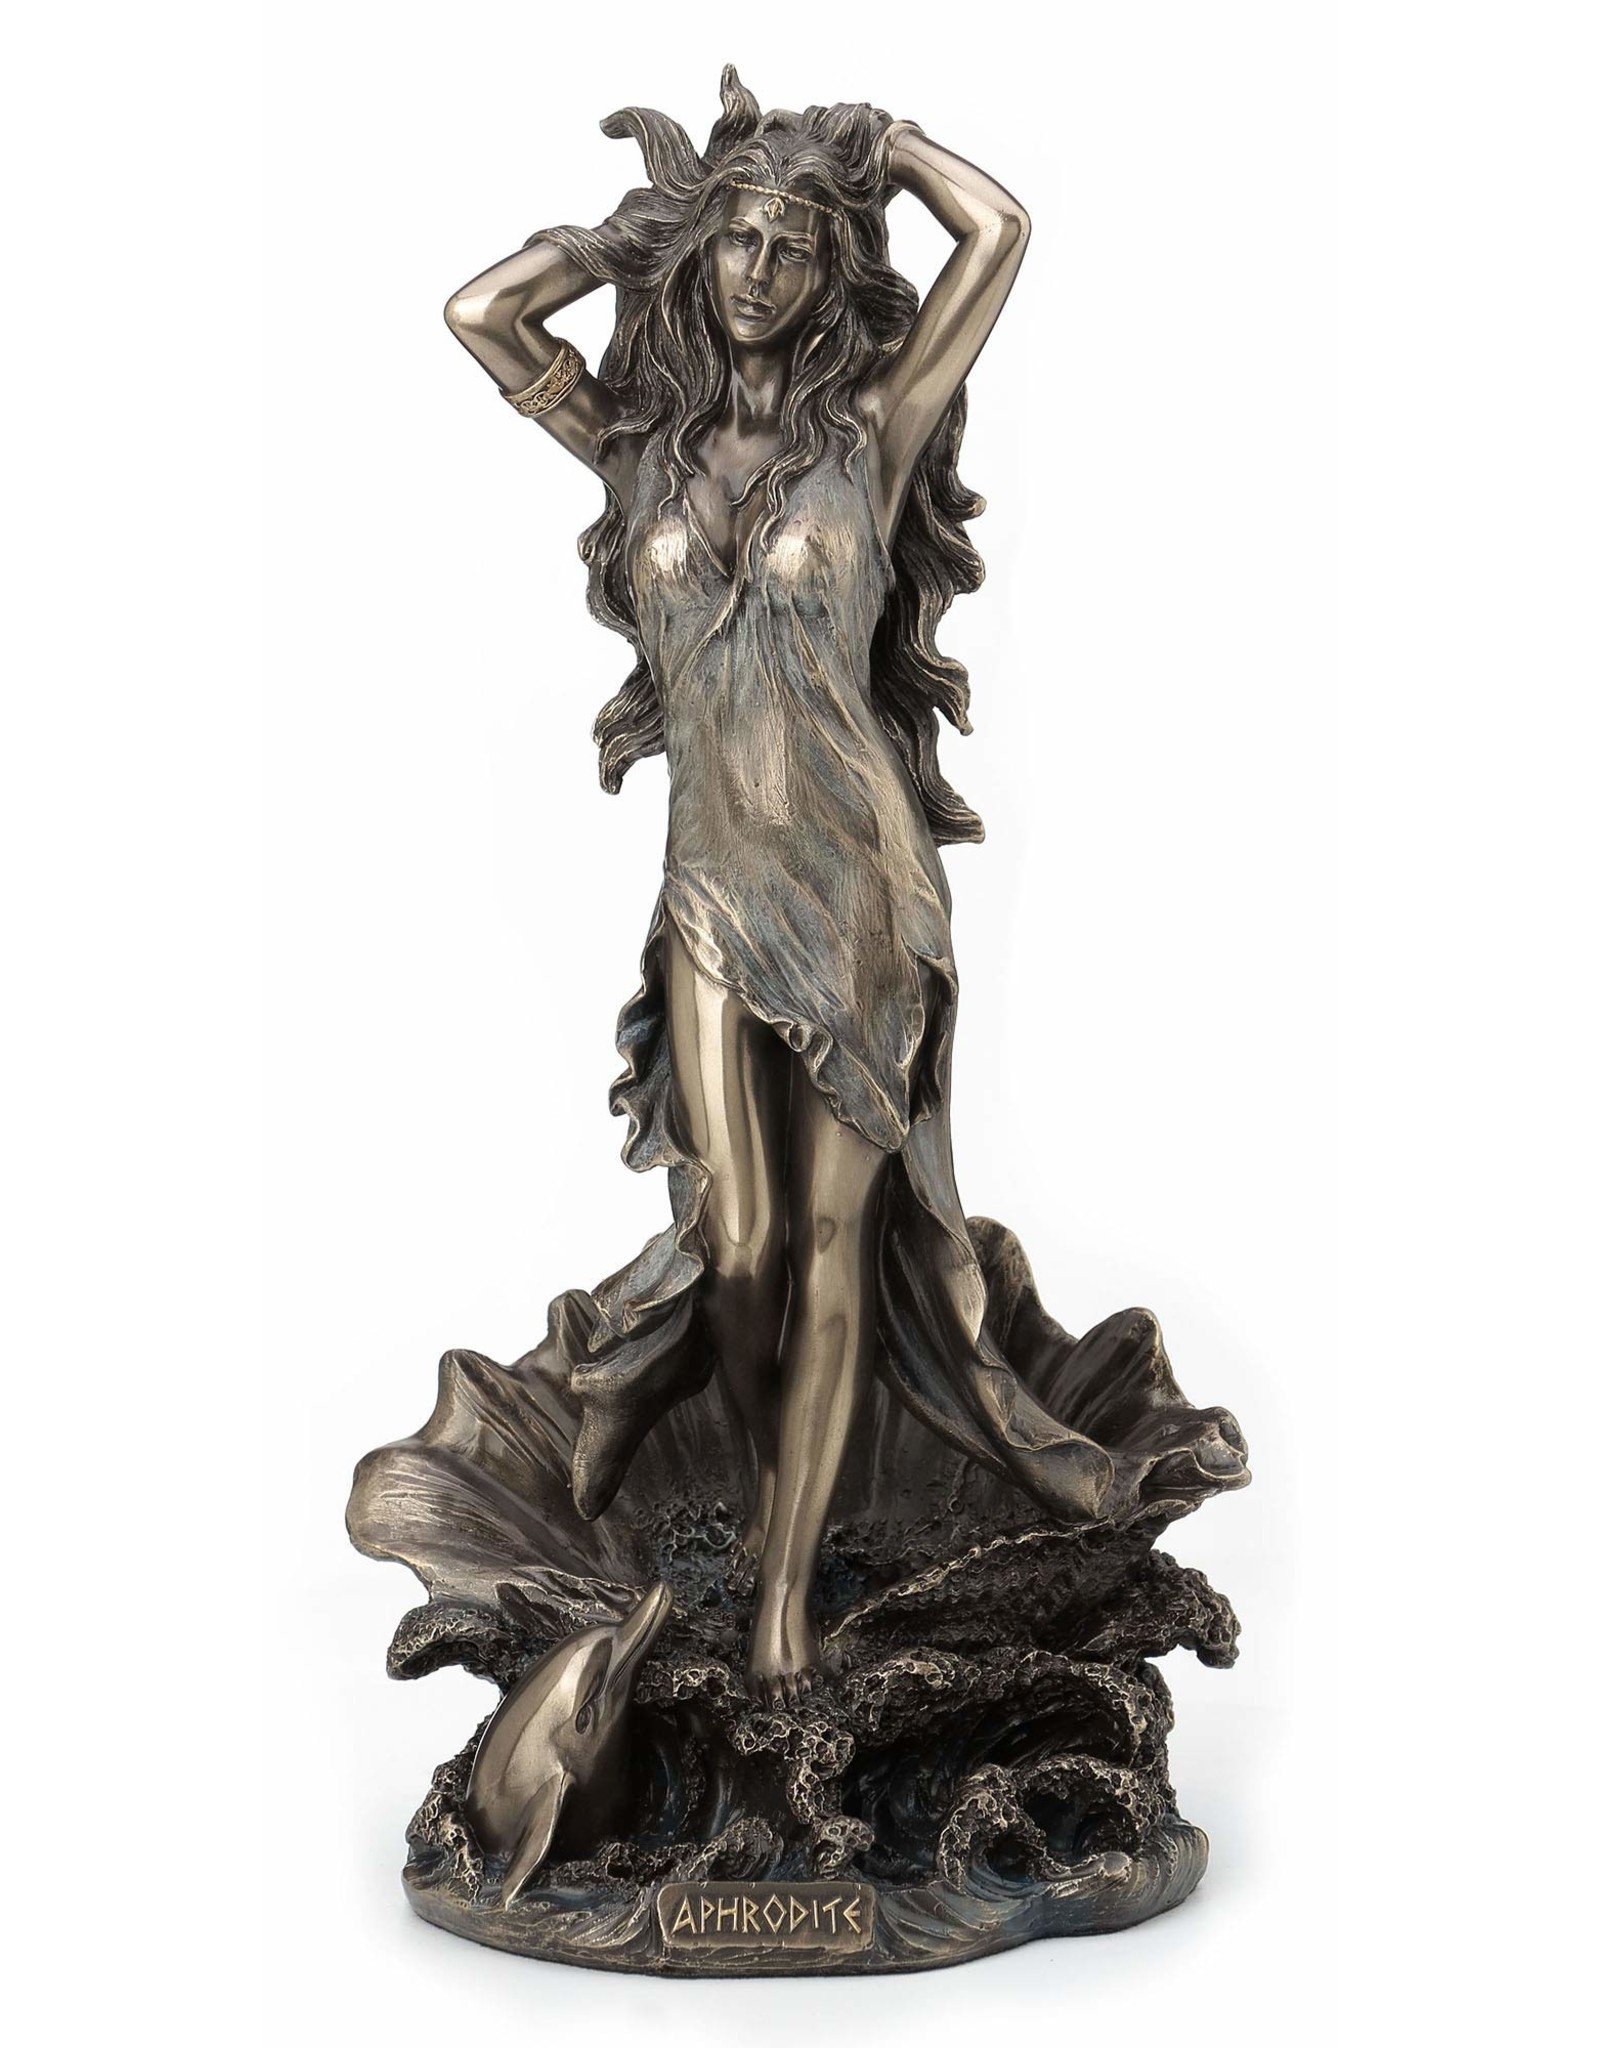 Veronese Design Giftware Beelden Collectables  - Aphrodite Stijgt op uit de Zee Gebronsd Beeld 29cm